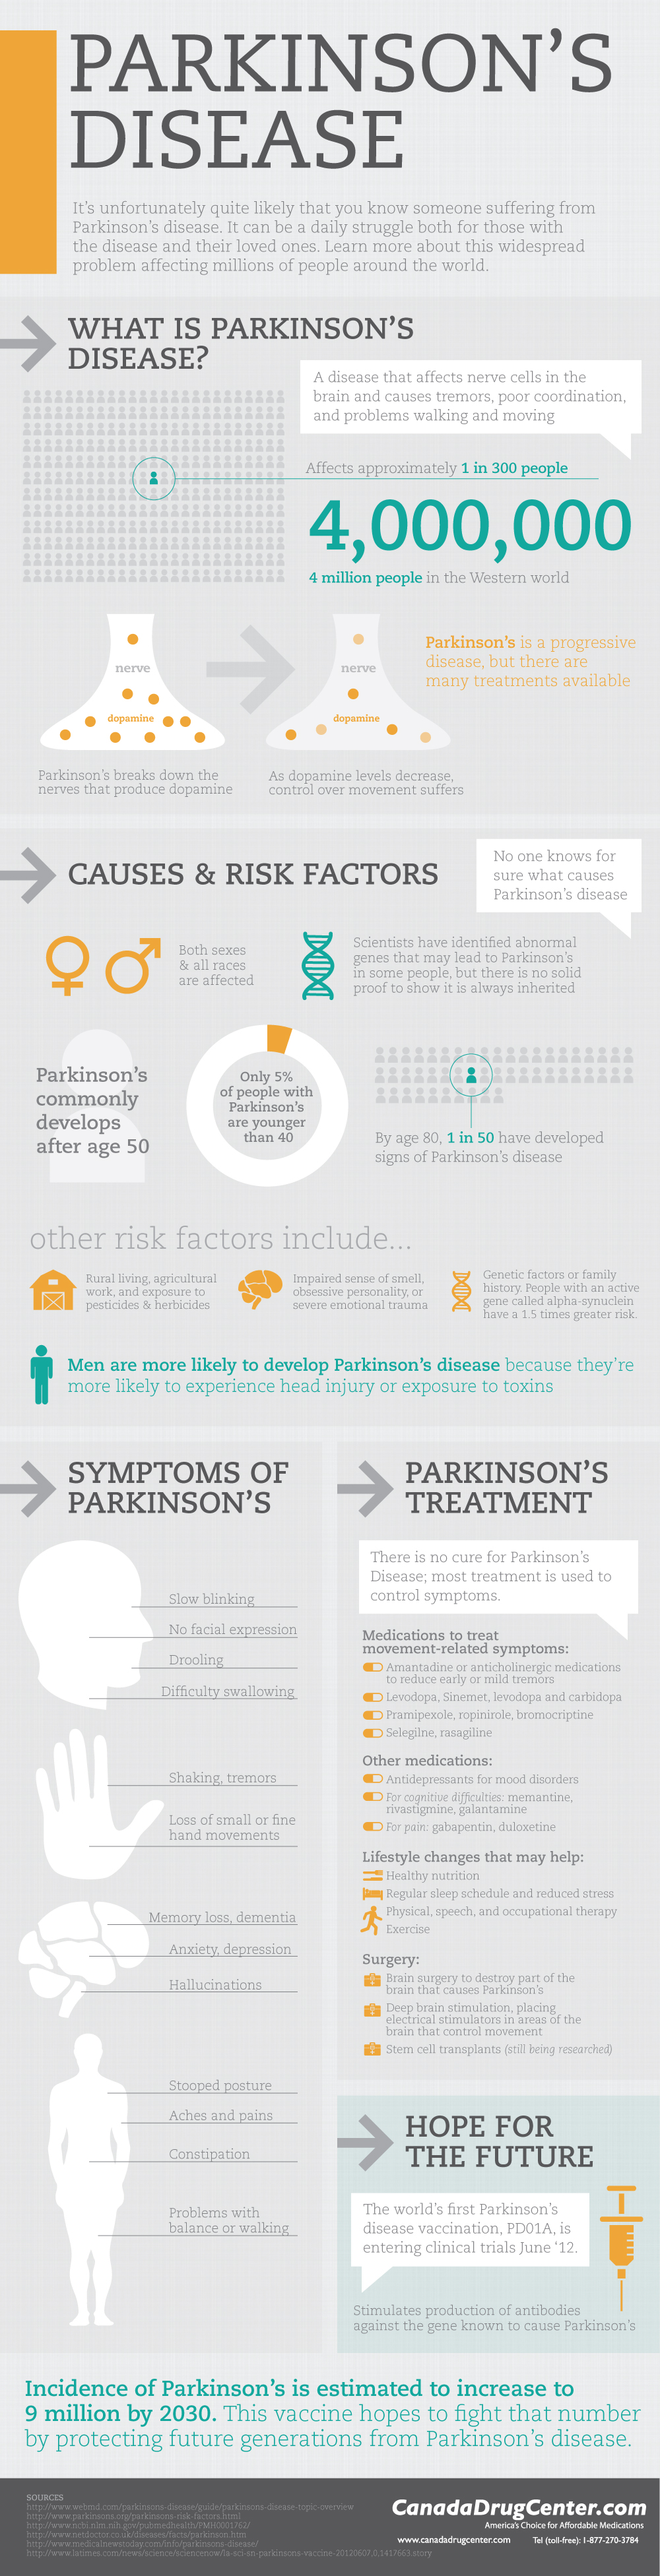 Parkisans Disease Facts